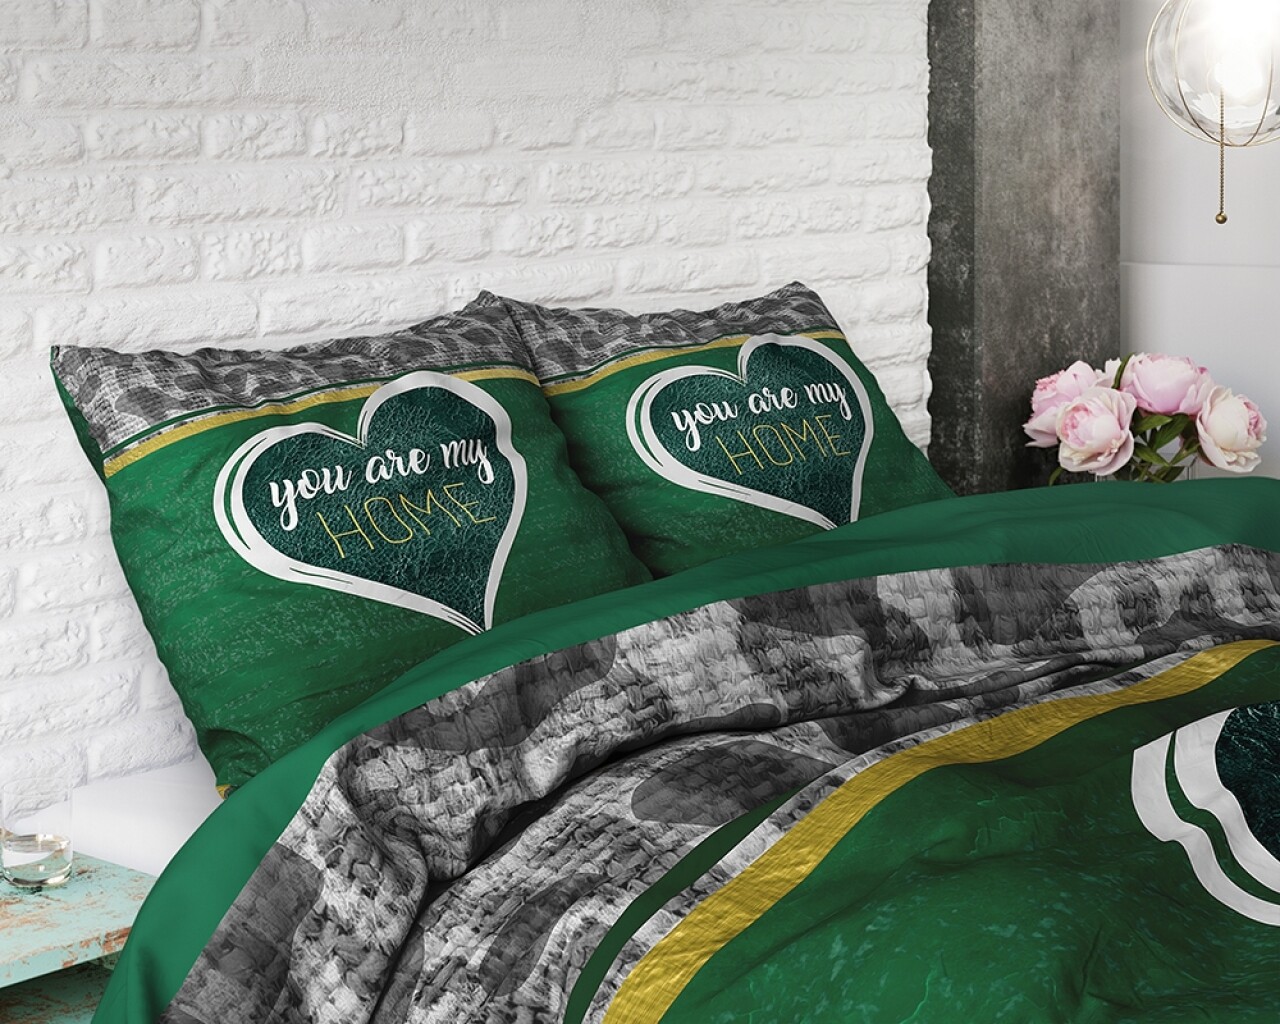 Lenjerie De Pat Dubla Home Green, Royal Textile, 3 Piese, 200 X 220 Cm, 100% Bumbac Flanel, Multicolor